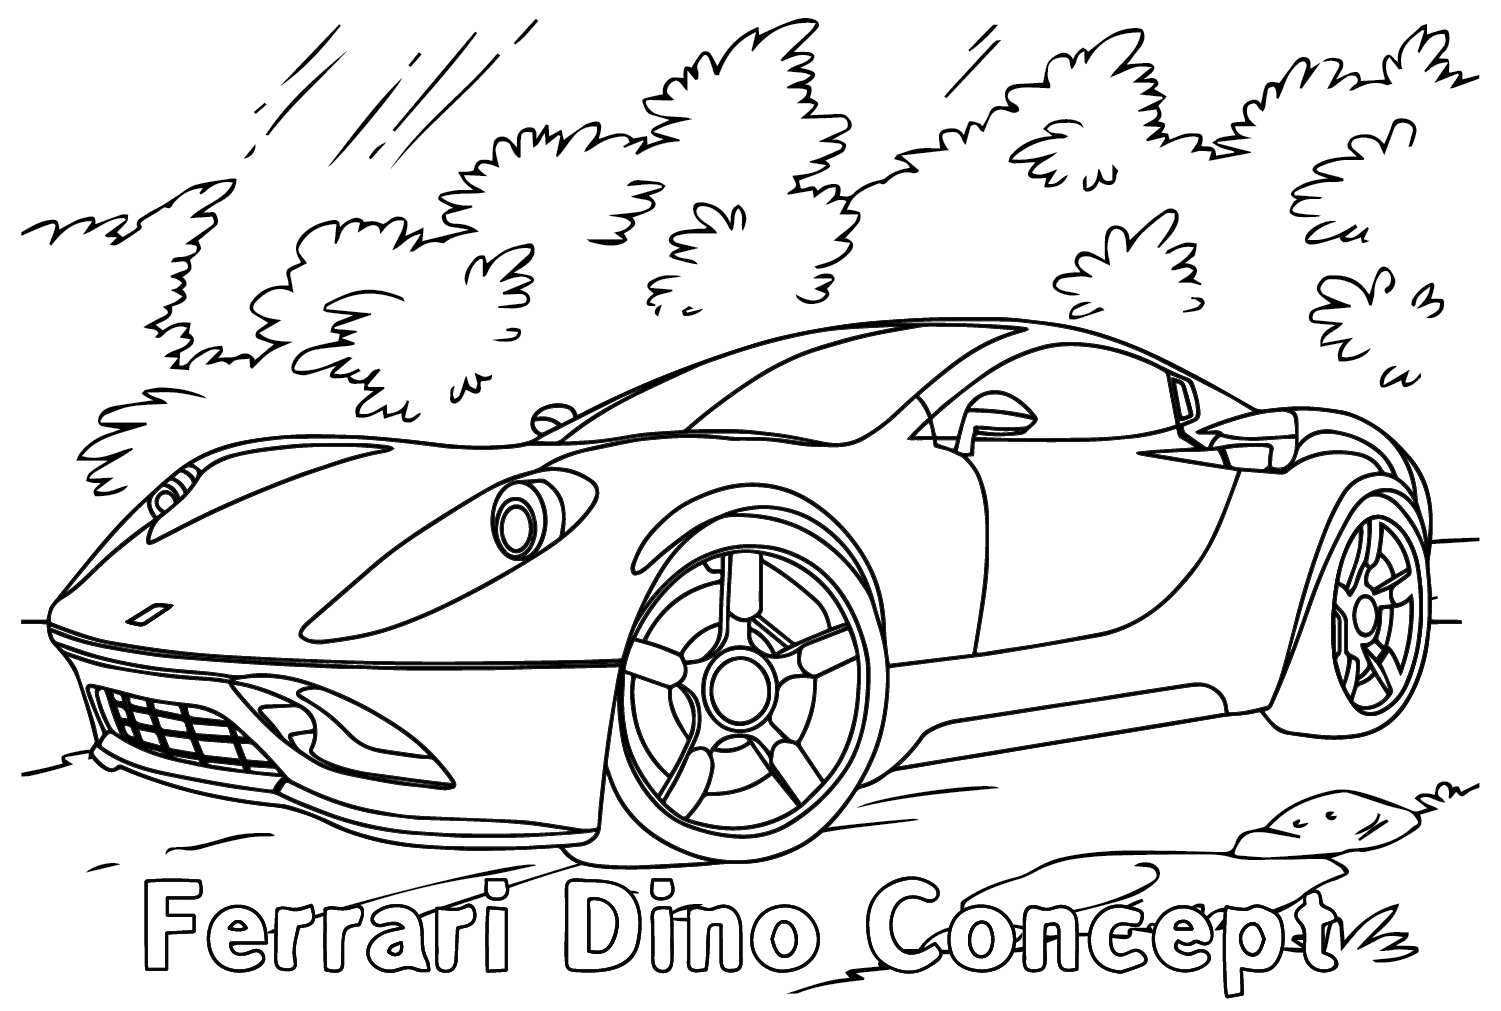 Ferrari Dino Concept Coloring Page